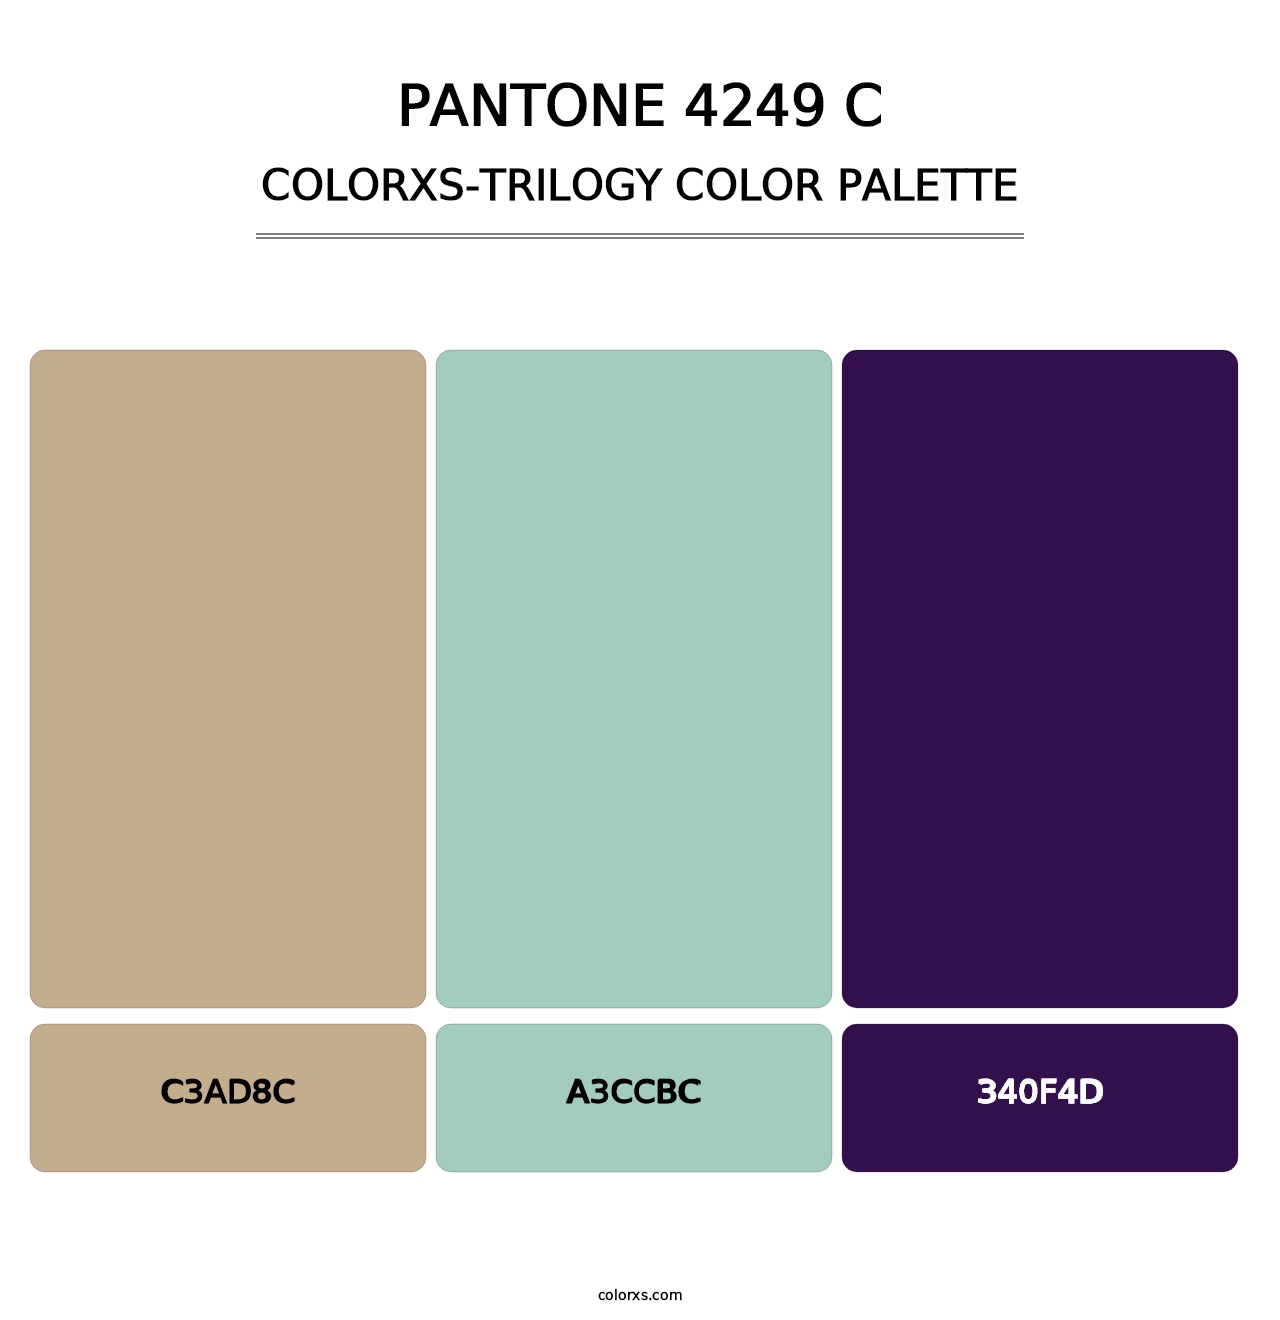 PANTONE 4249 C - Colorxs Trilogy Palette